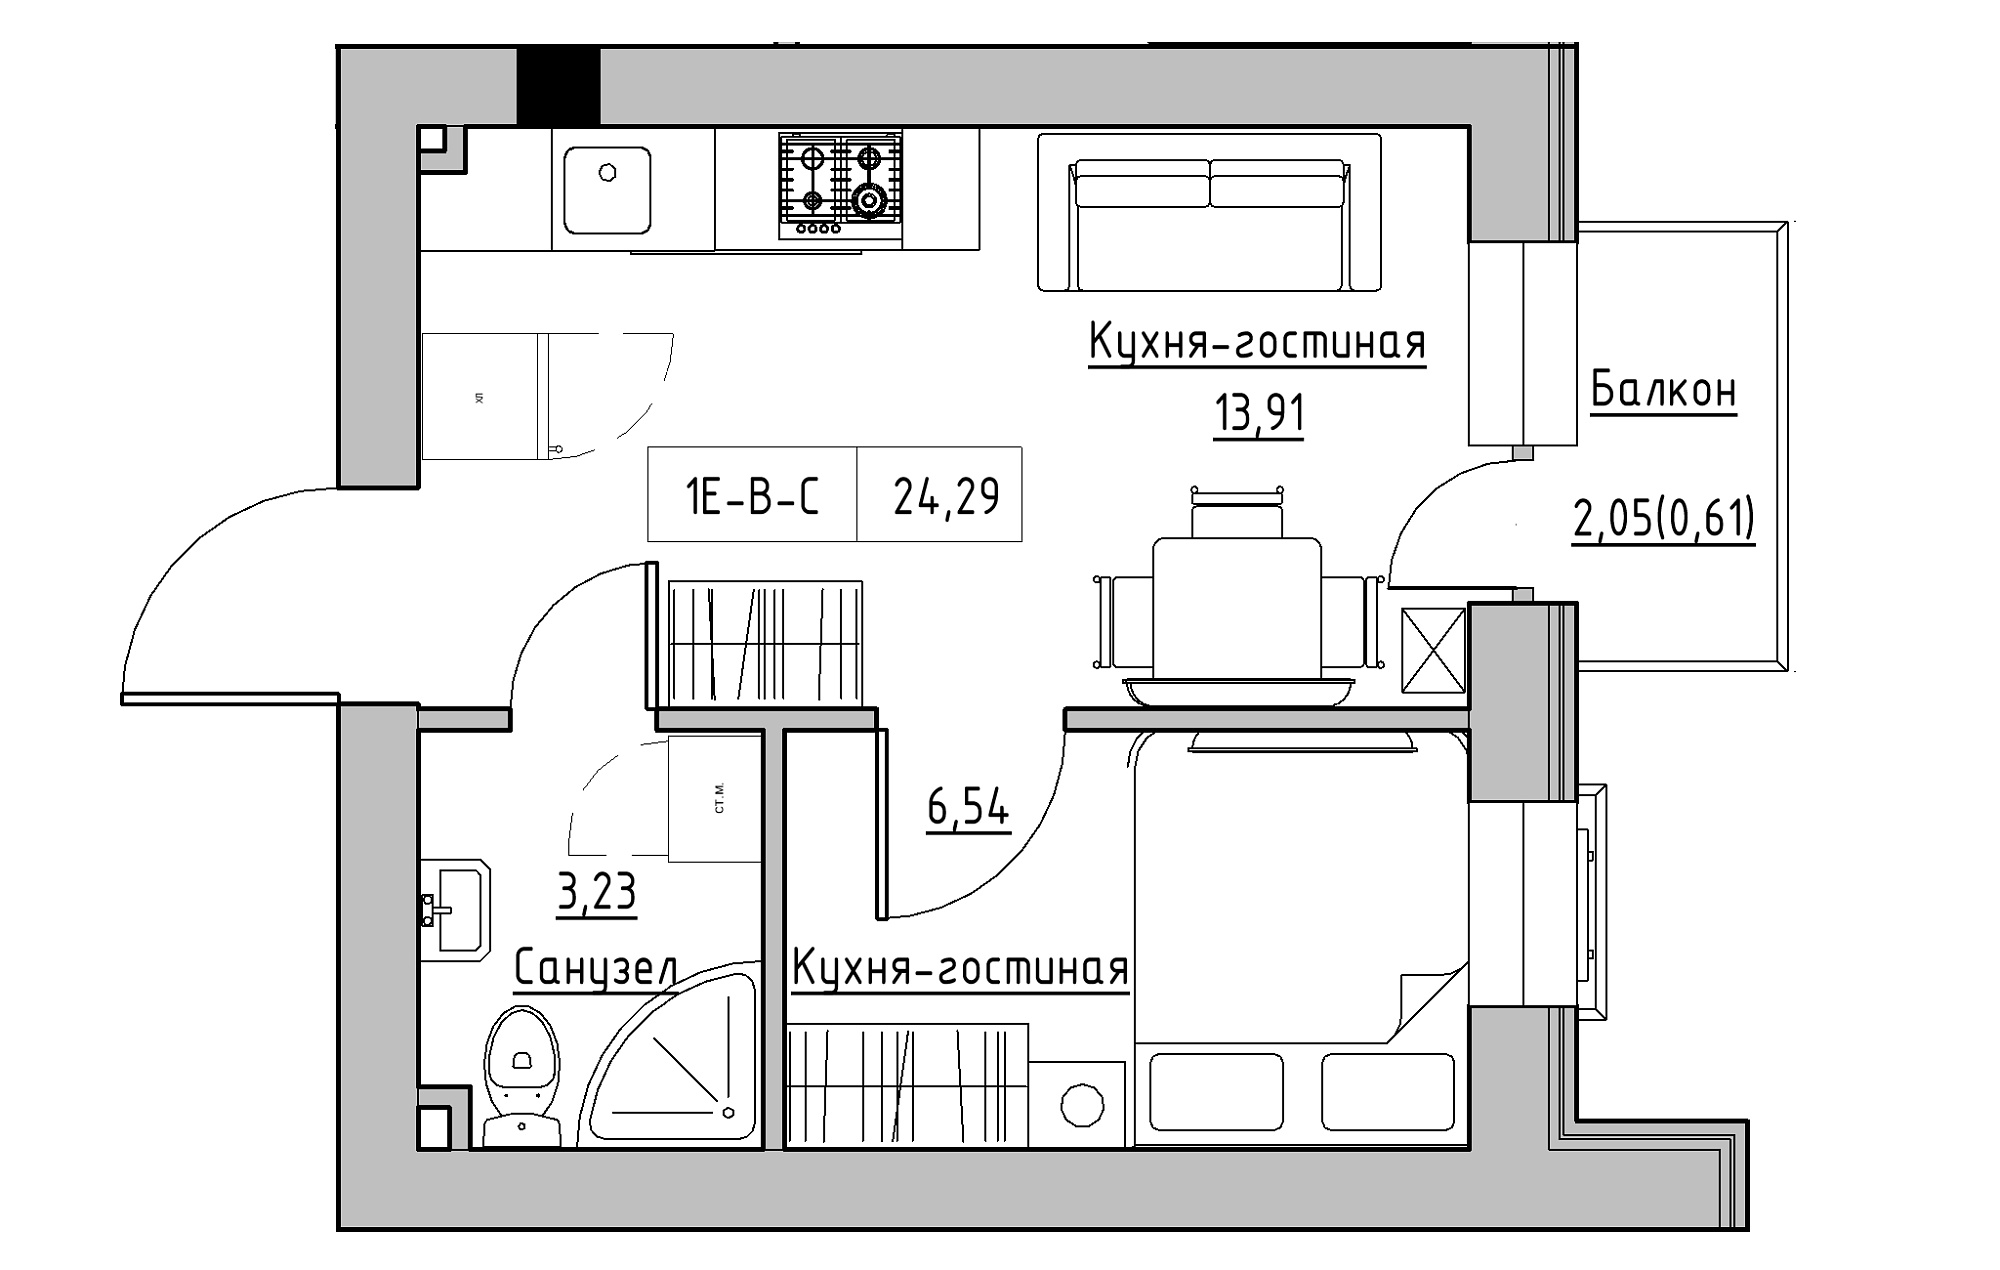 Планування 1-к квартира площею 24.29м2, KS-018-03/0009.